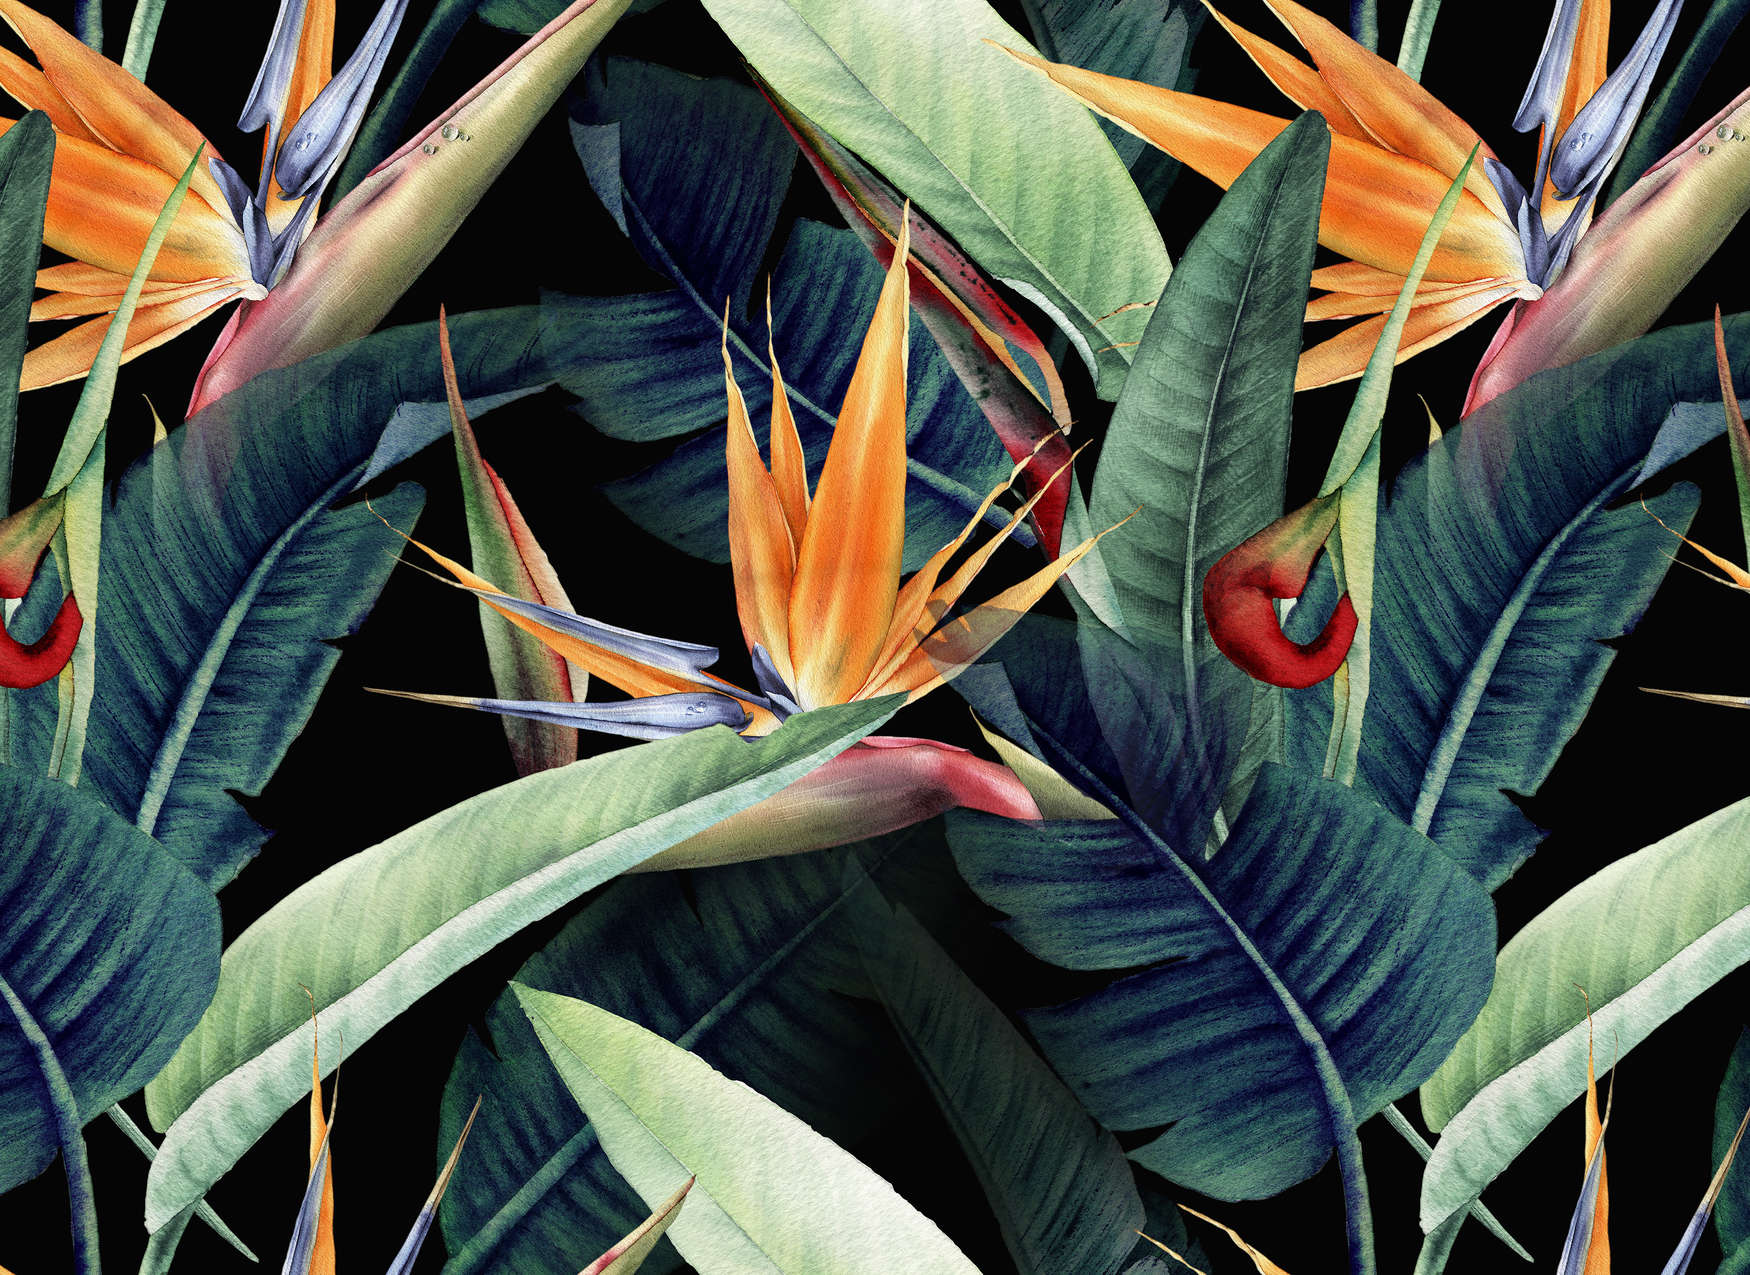             Papier peint panoramique motif jungle peint avec des feuilles - vert, orange, multicolore
        